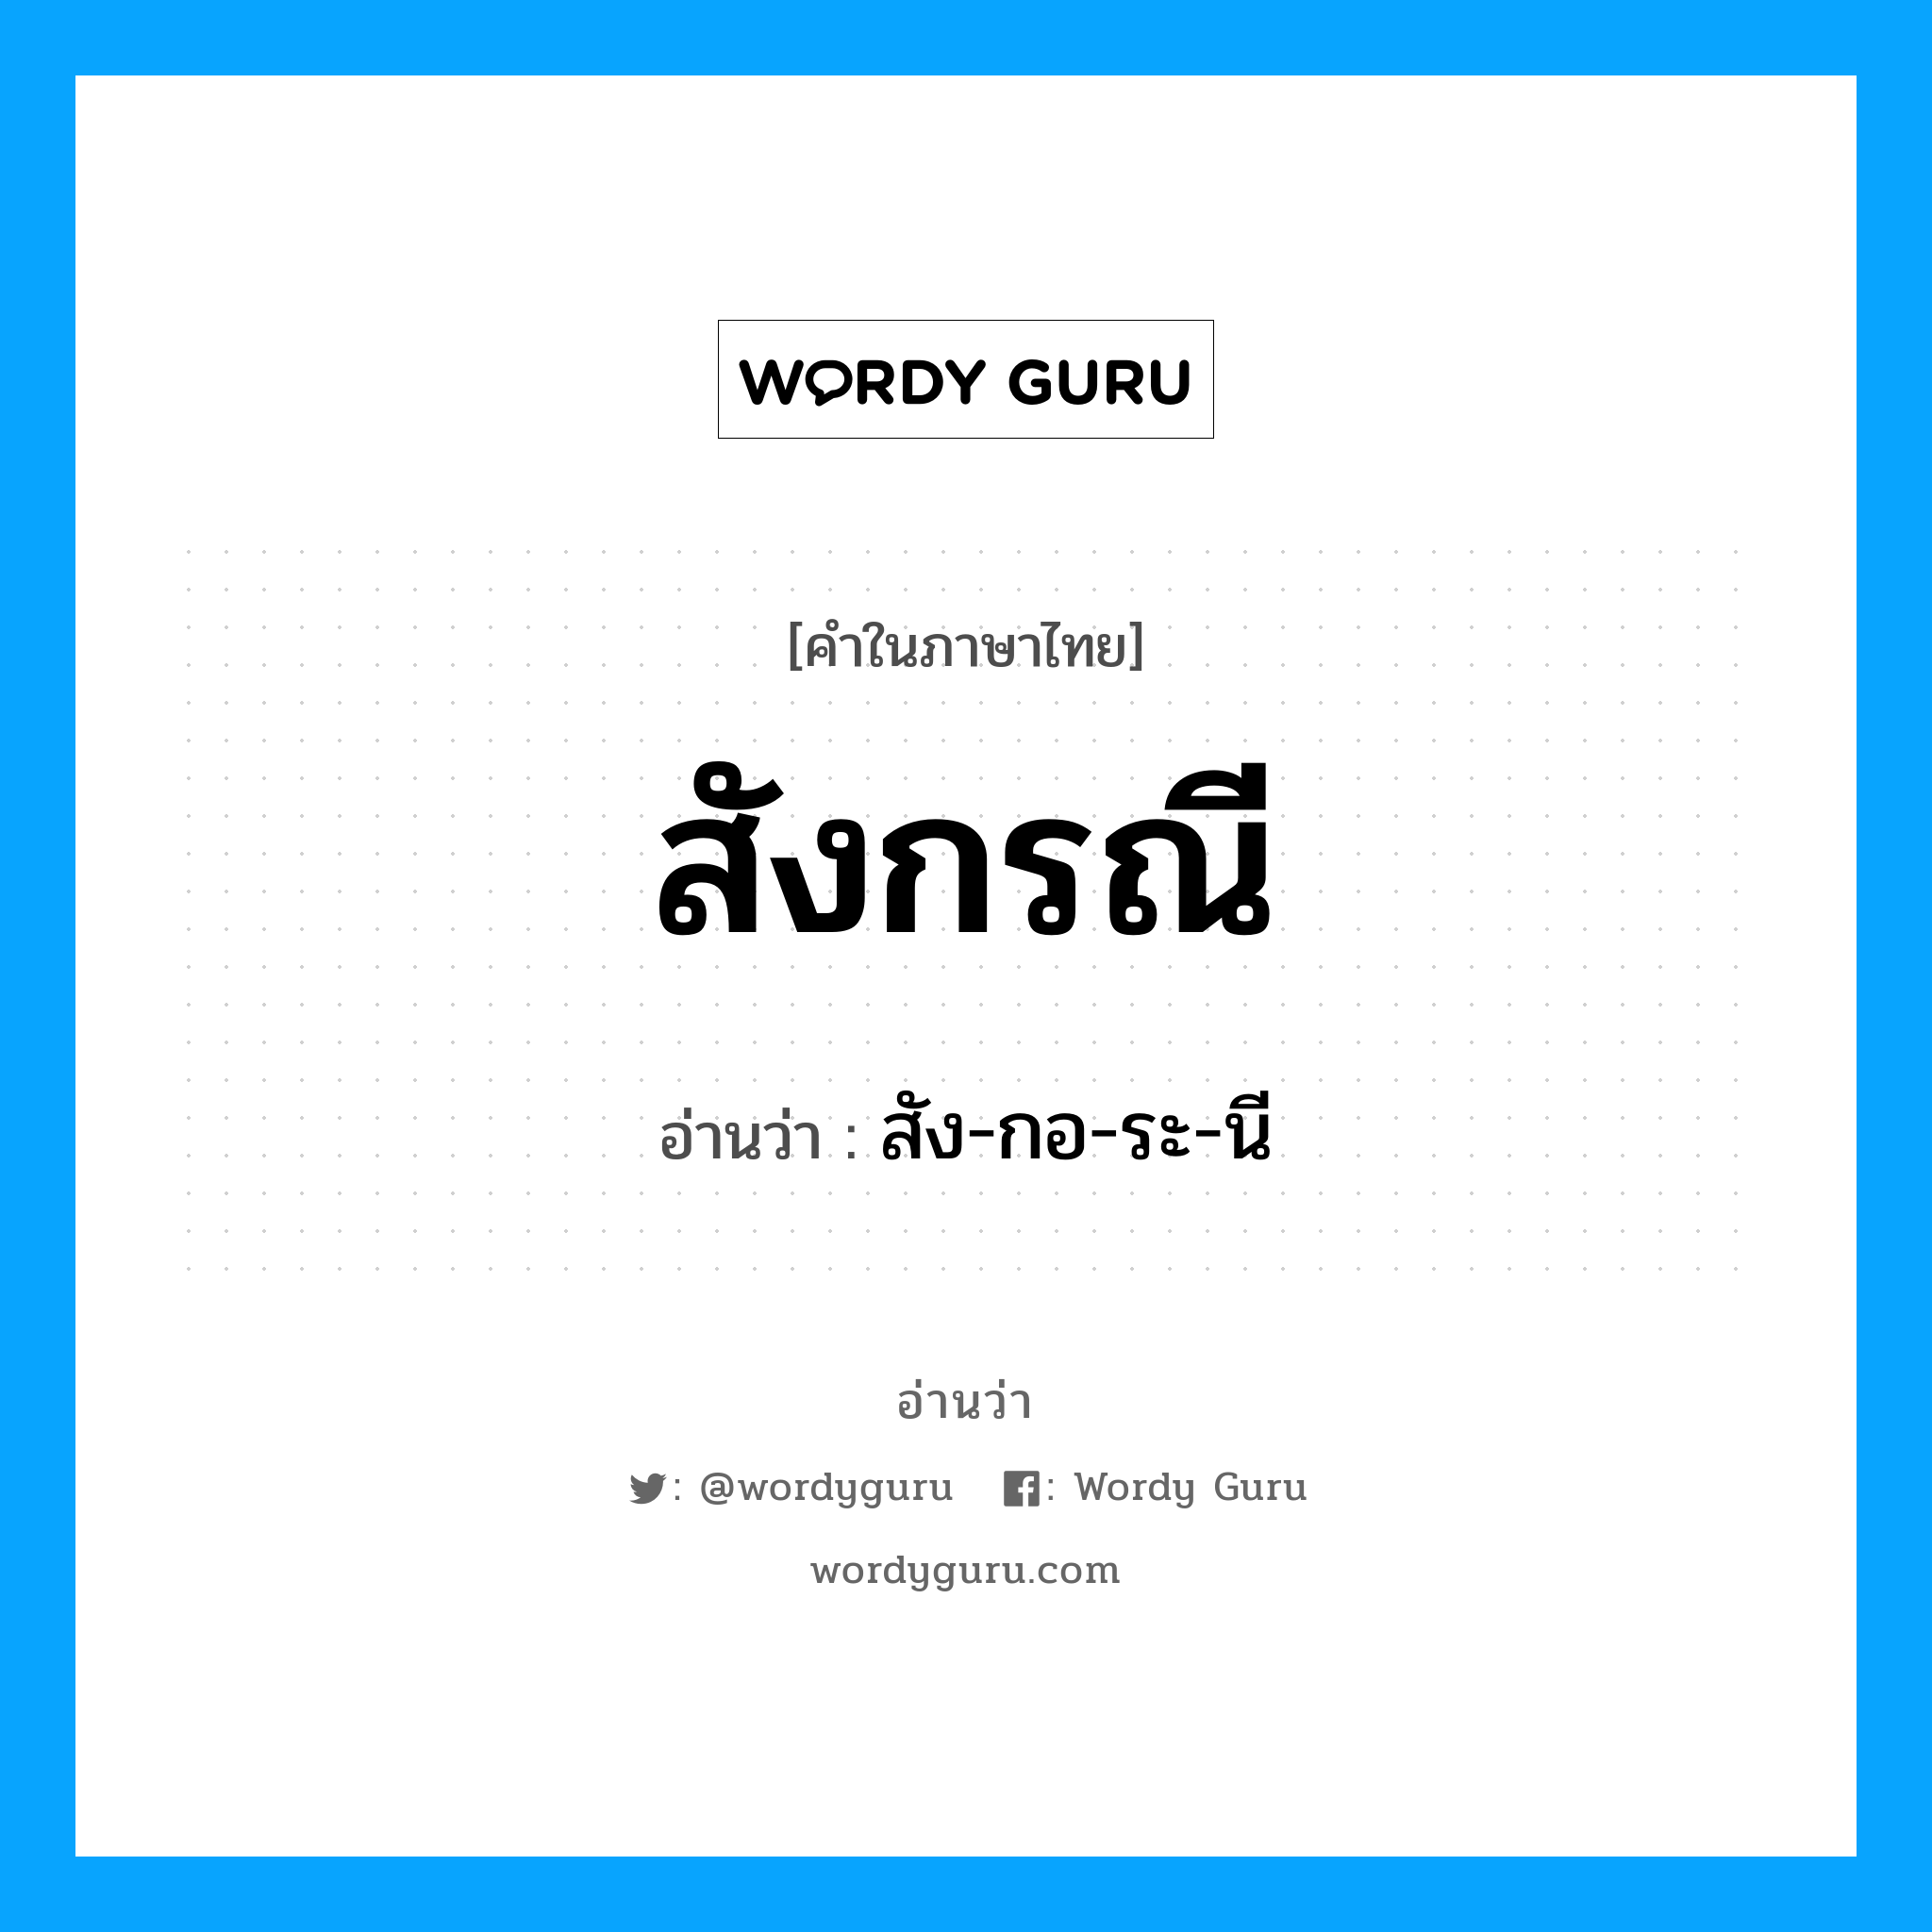 สัง-กอ-ระ-นี เป็นคำอ่านของคำไหน?, คำในภาษาไทย สัง-กอ-ระ-นี อ่านว่า สังกรณี